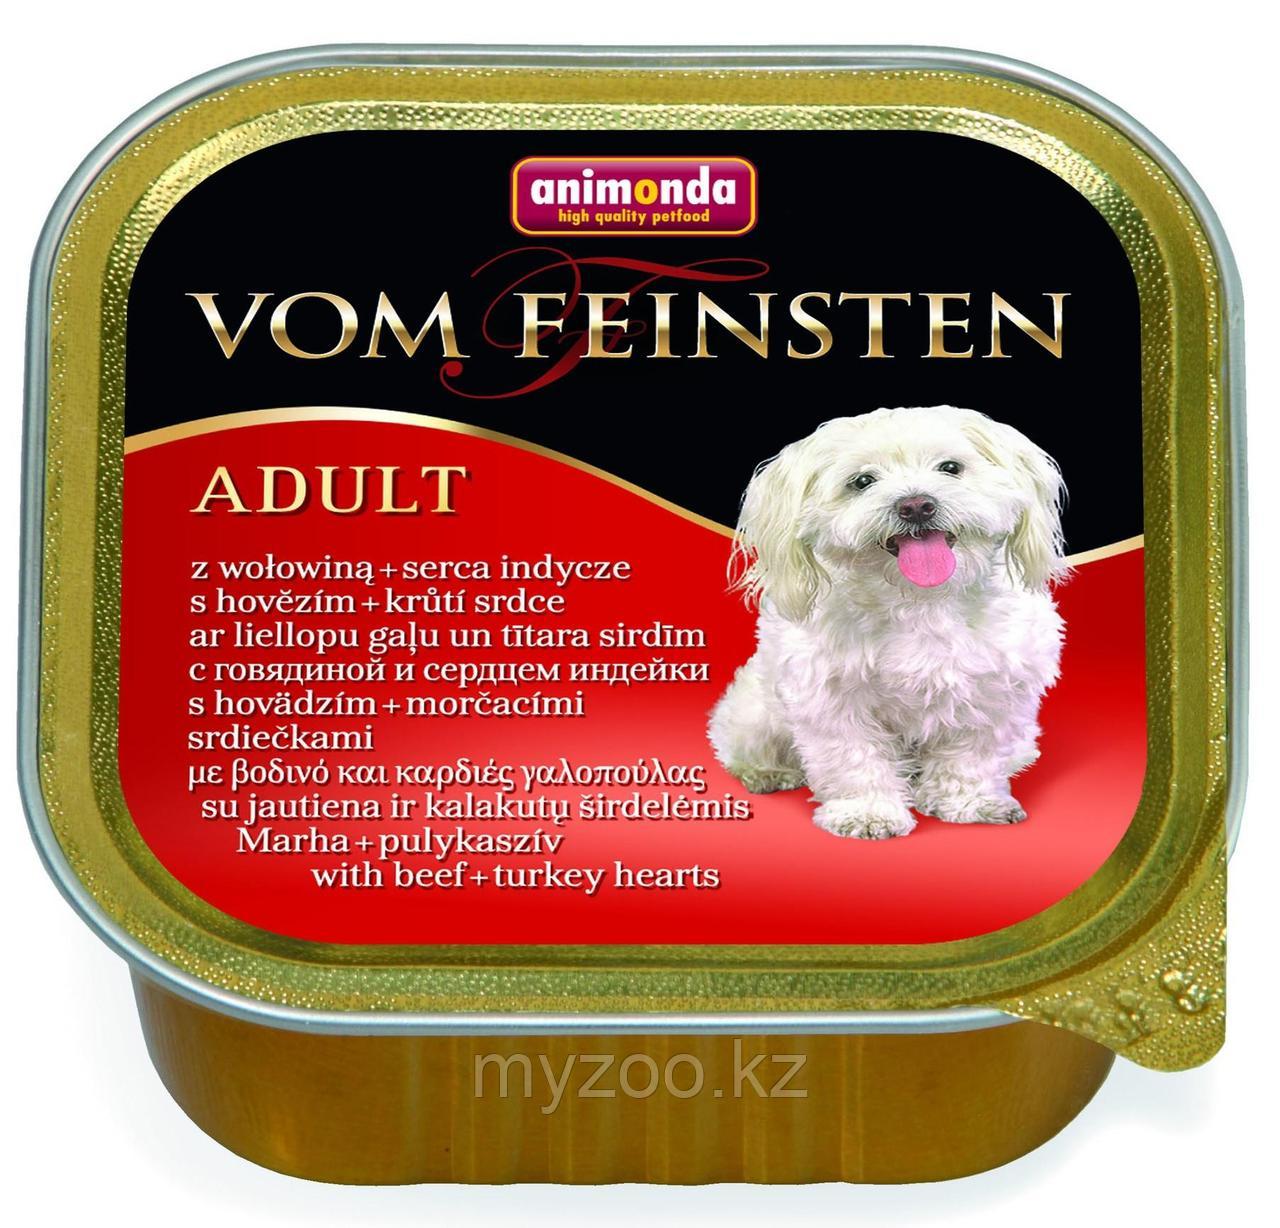 Консервы Vom Feinsten Adult с говядиной и сердцем индейки для взрослых собак, 150 гр